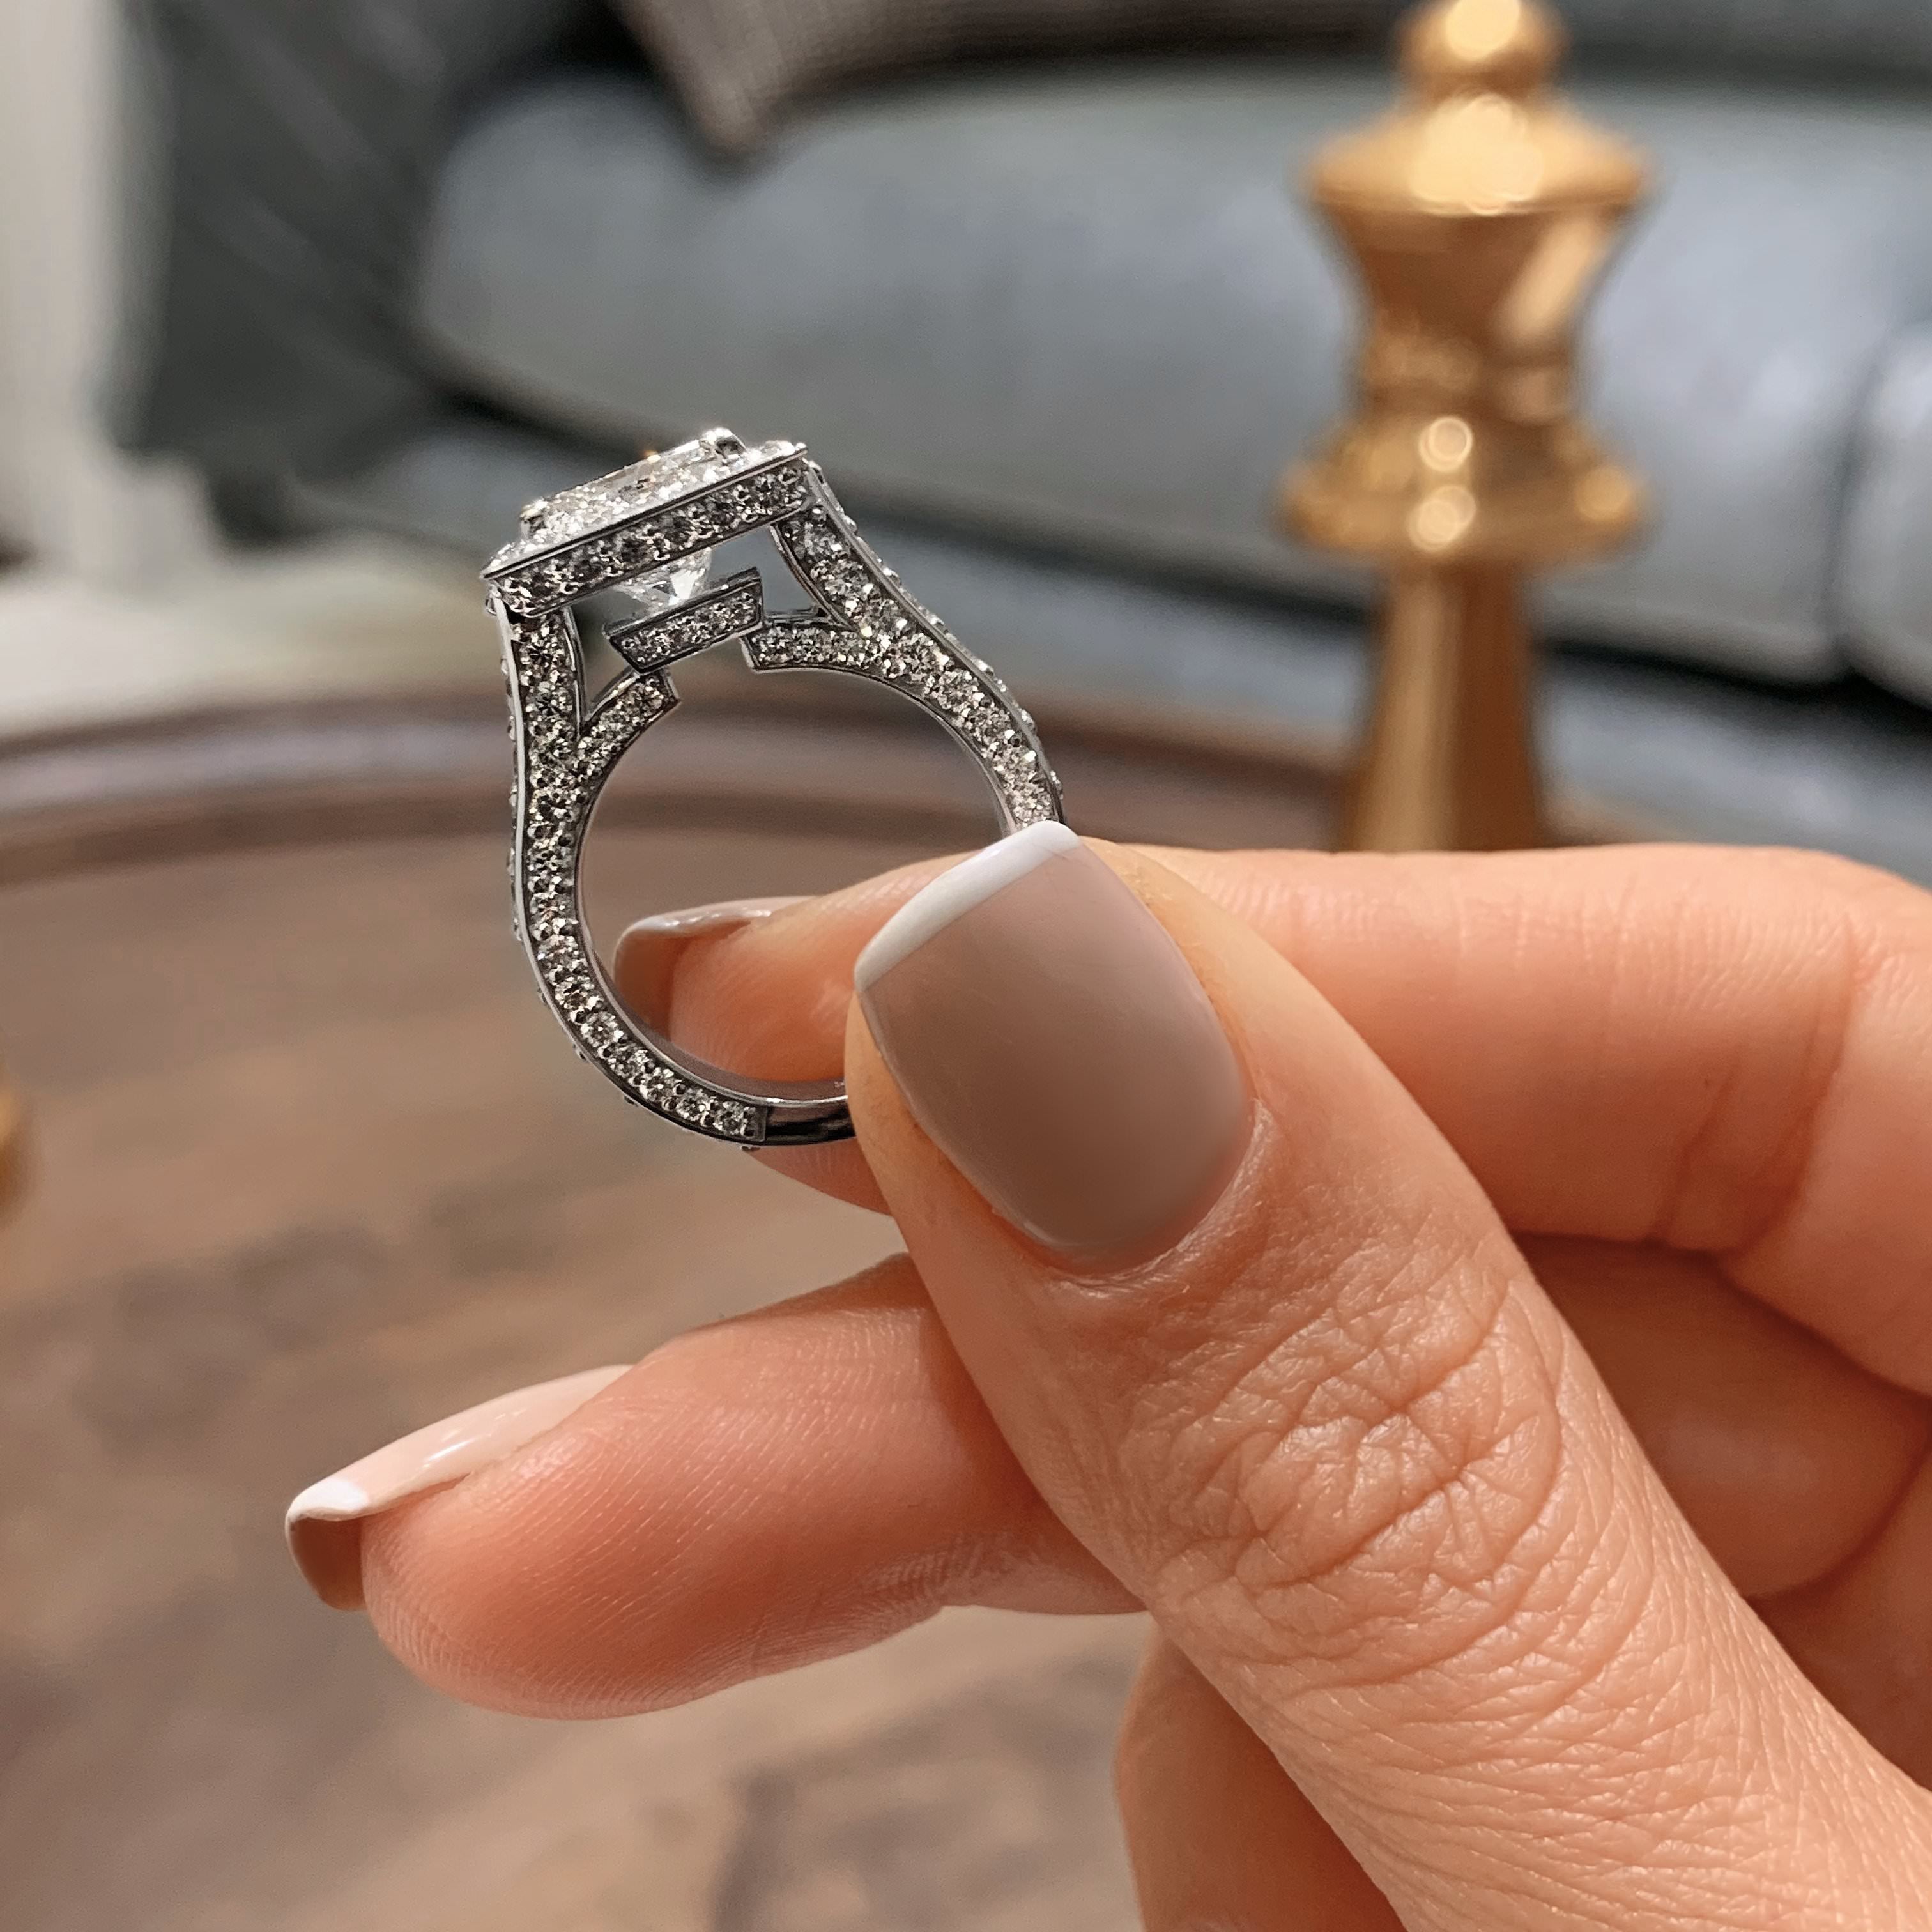 Freya Diamond Engagement Ring   (5 Carat) -14K White Gold